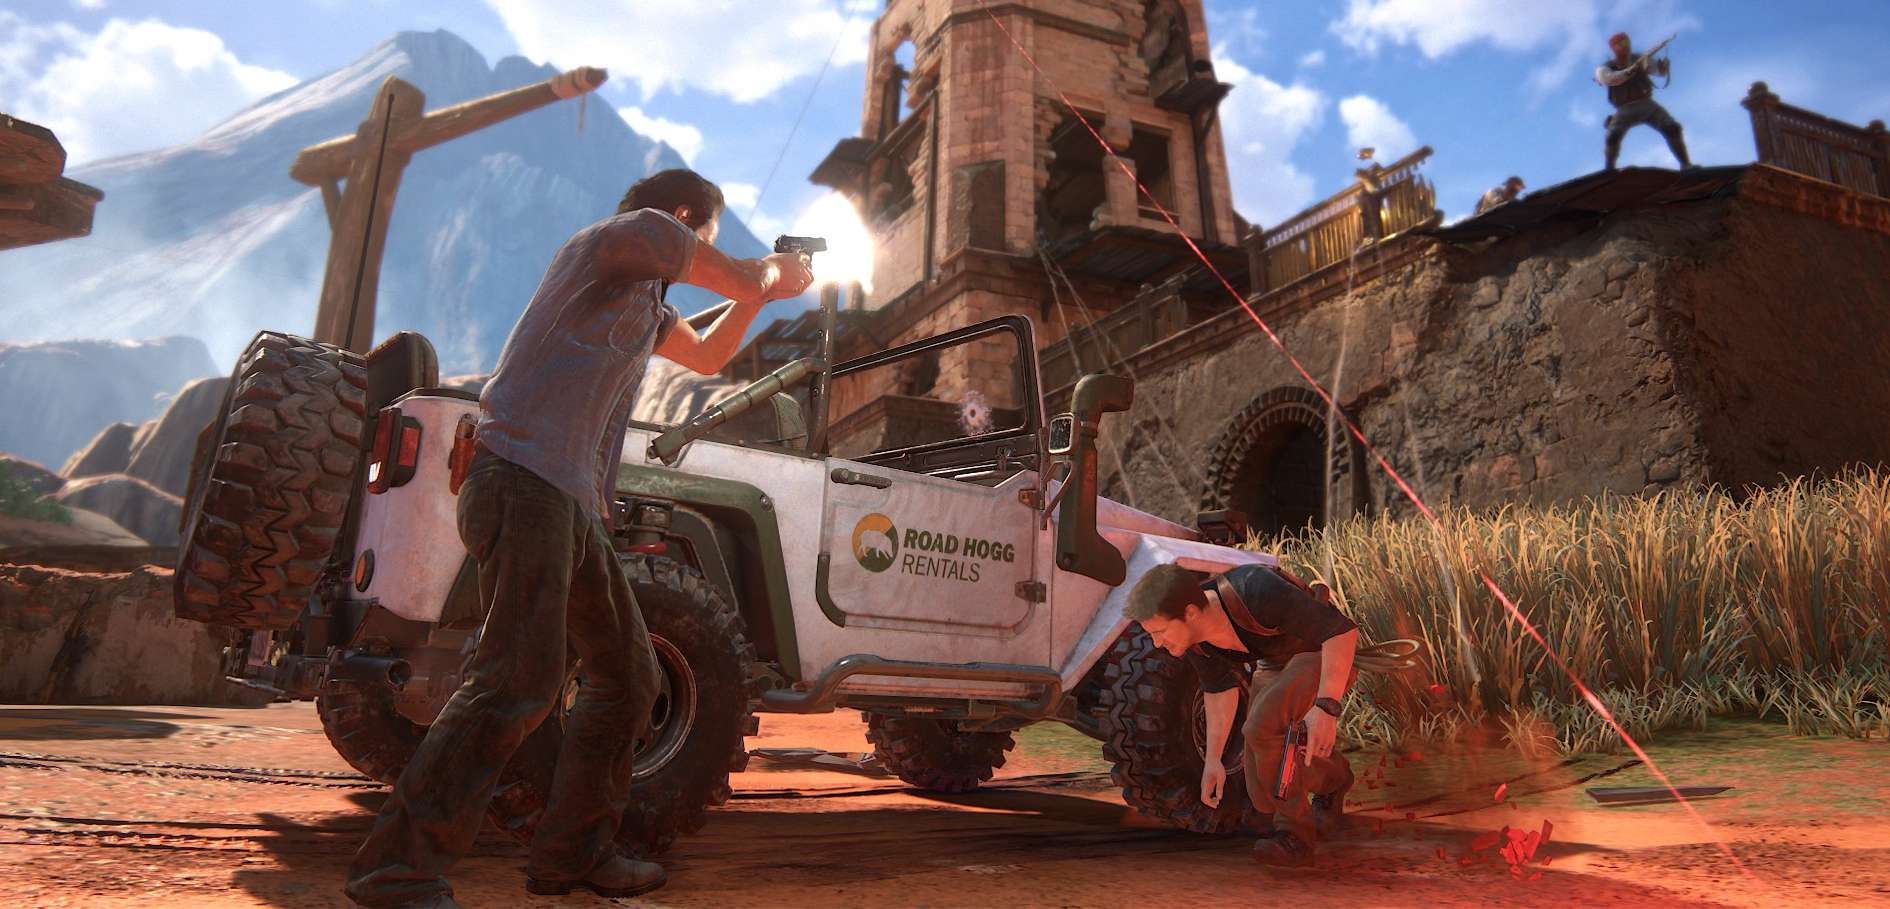 Uncharted 4. Hardkorowe wyzwanie w trybie Survival i poprawki bugów